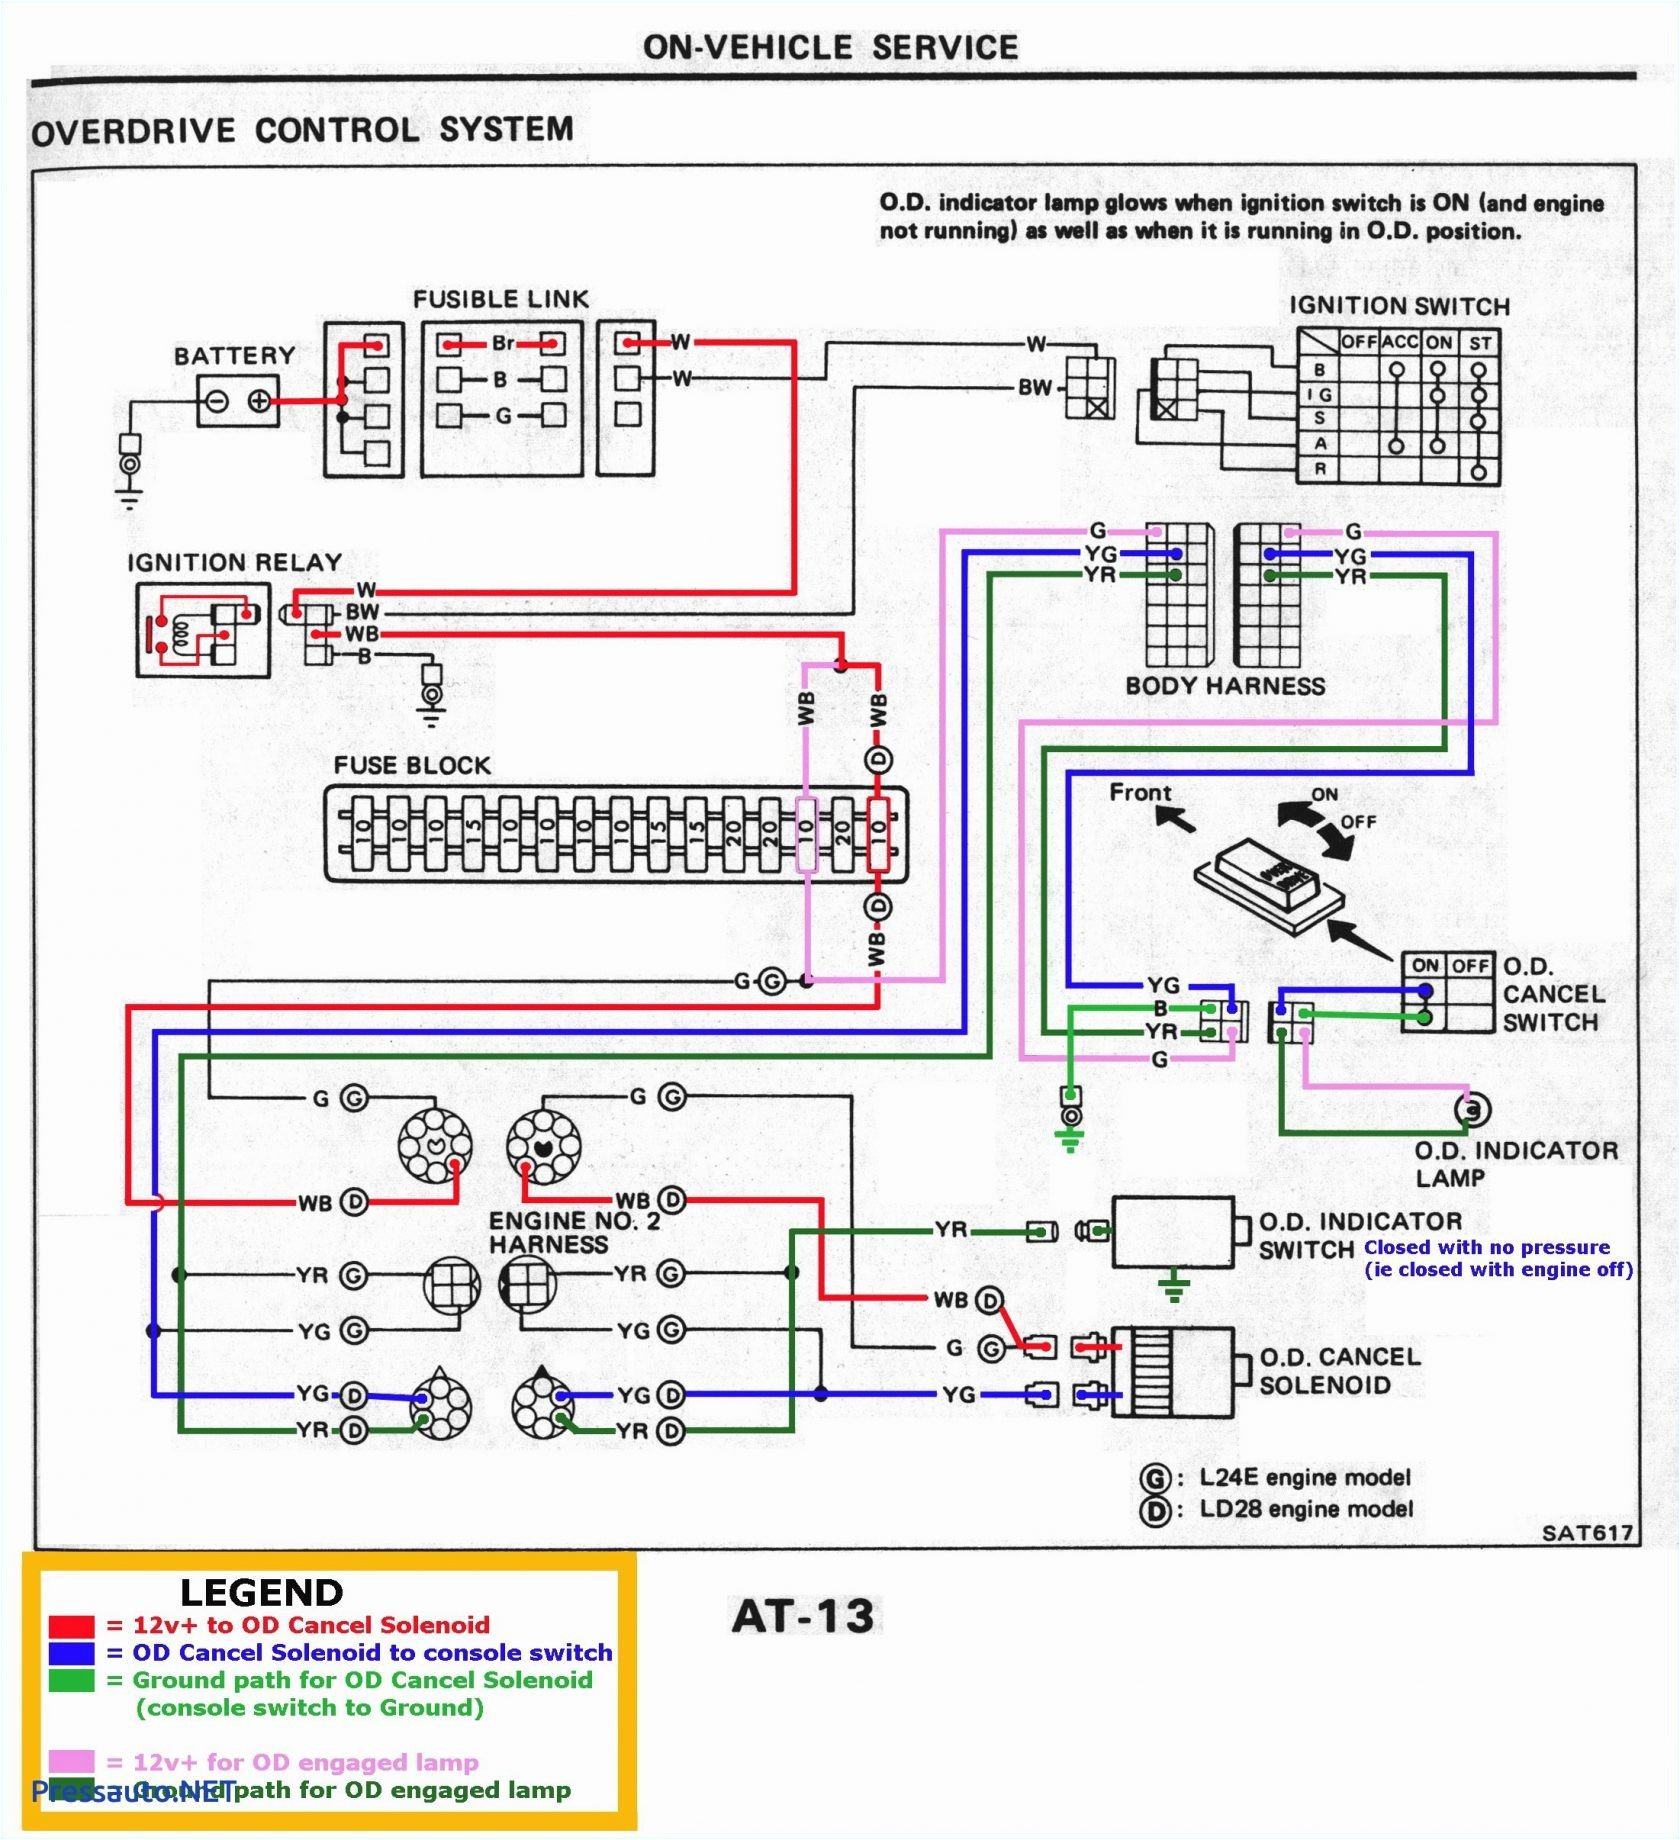 1969 camaro dash wiring diagram 1984 camaro wiring diagram pdf blog wiring diagram of 1969 camaro dash wiring diagram jpg